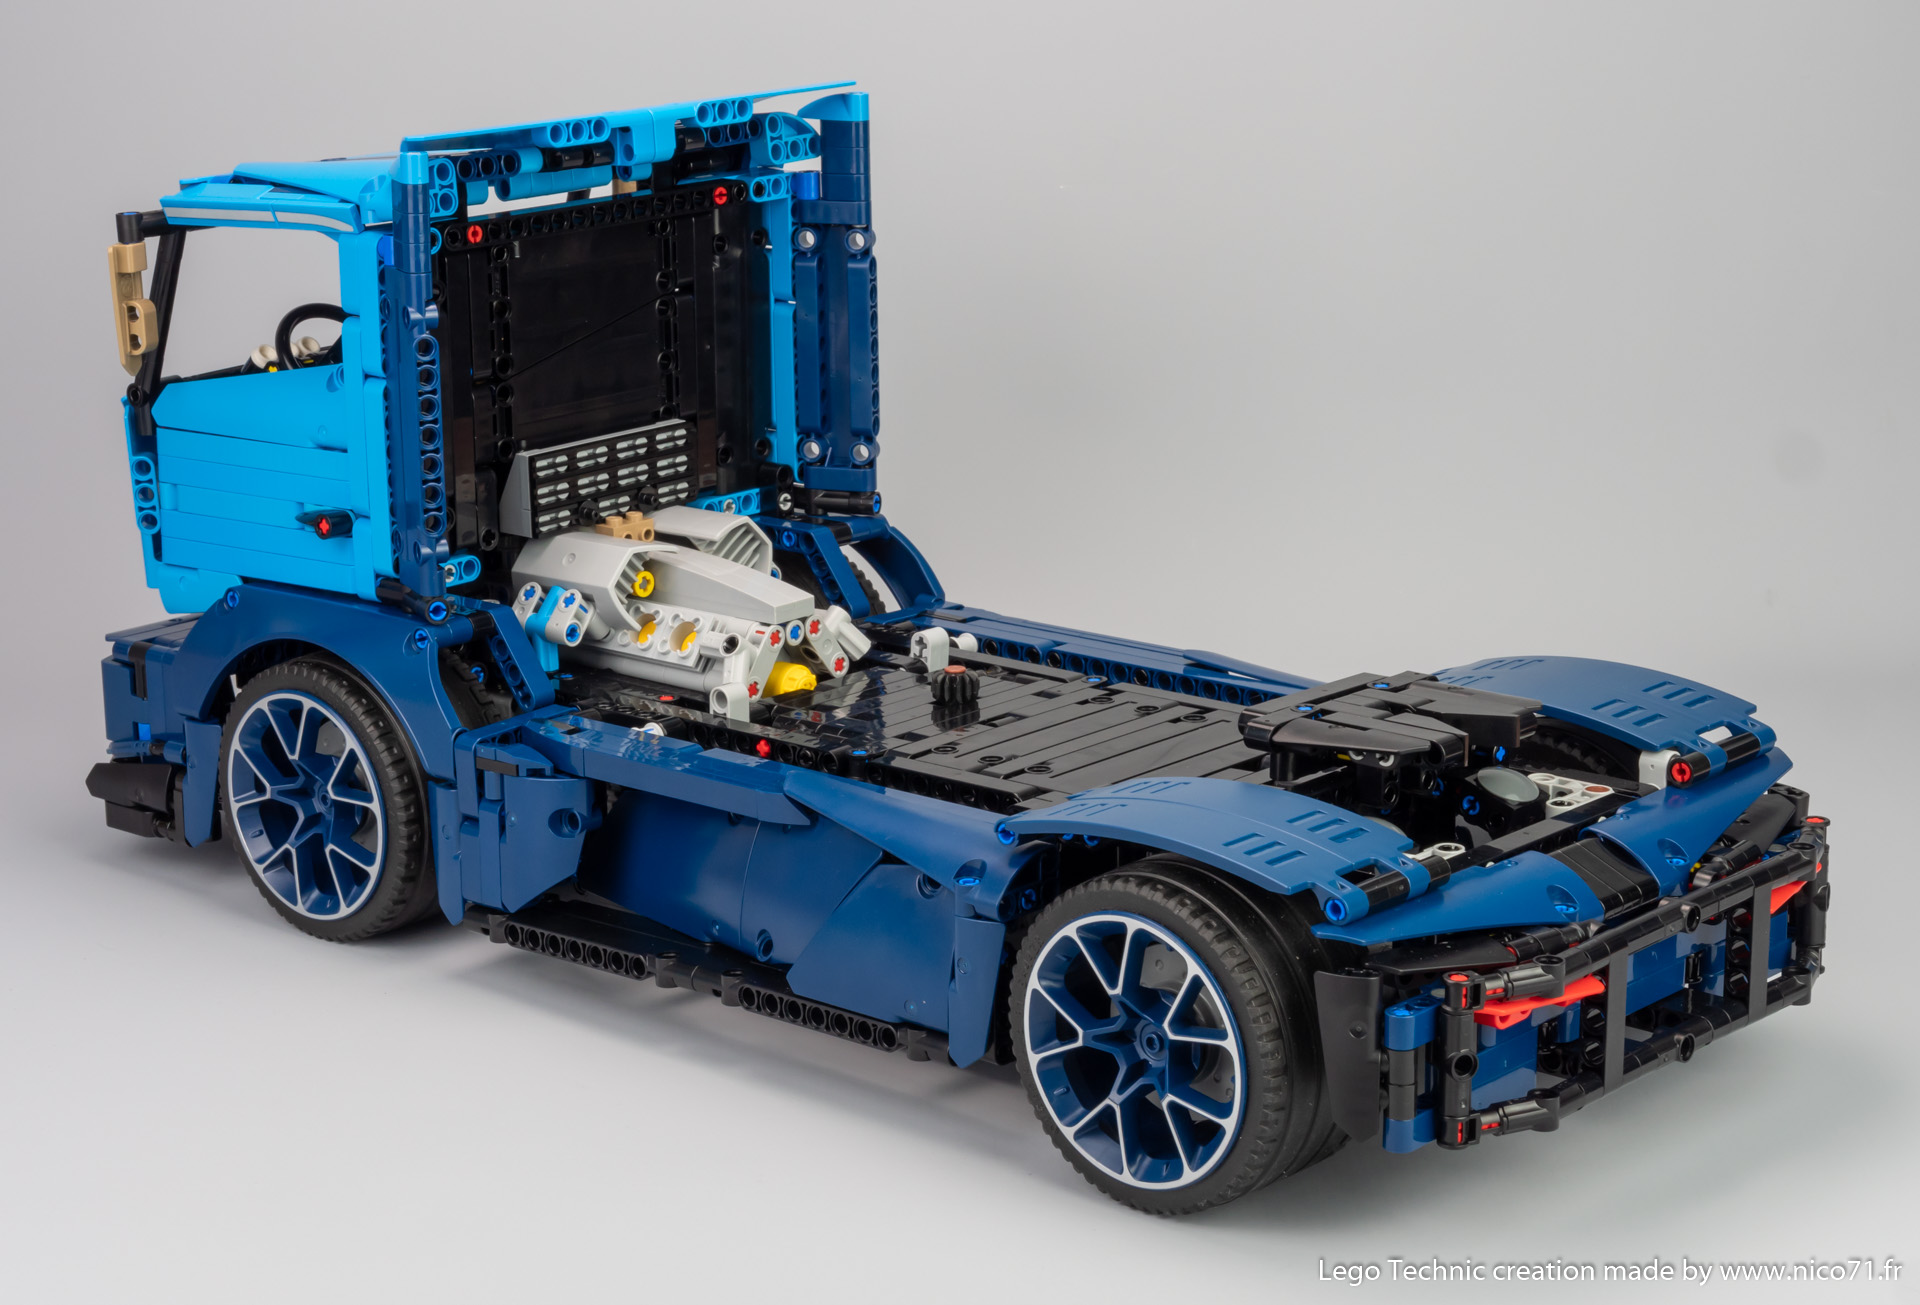 Lego-42083-model-b-race-truck-4